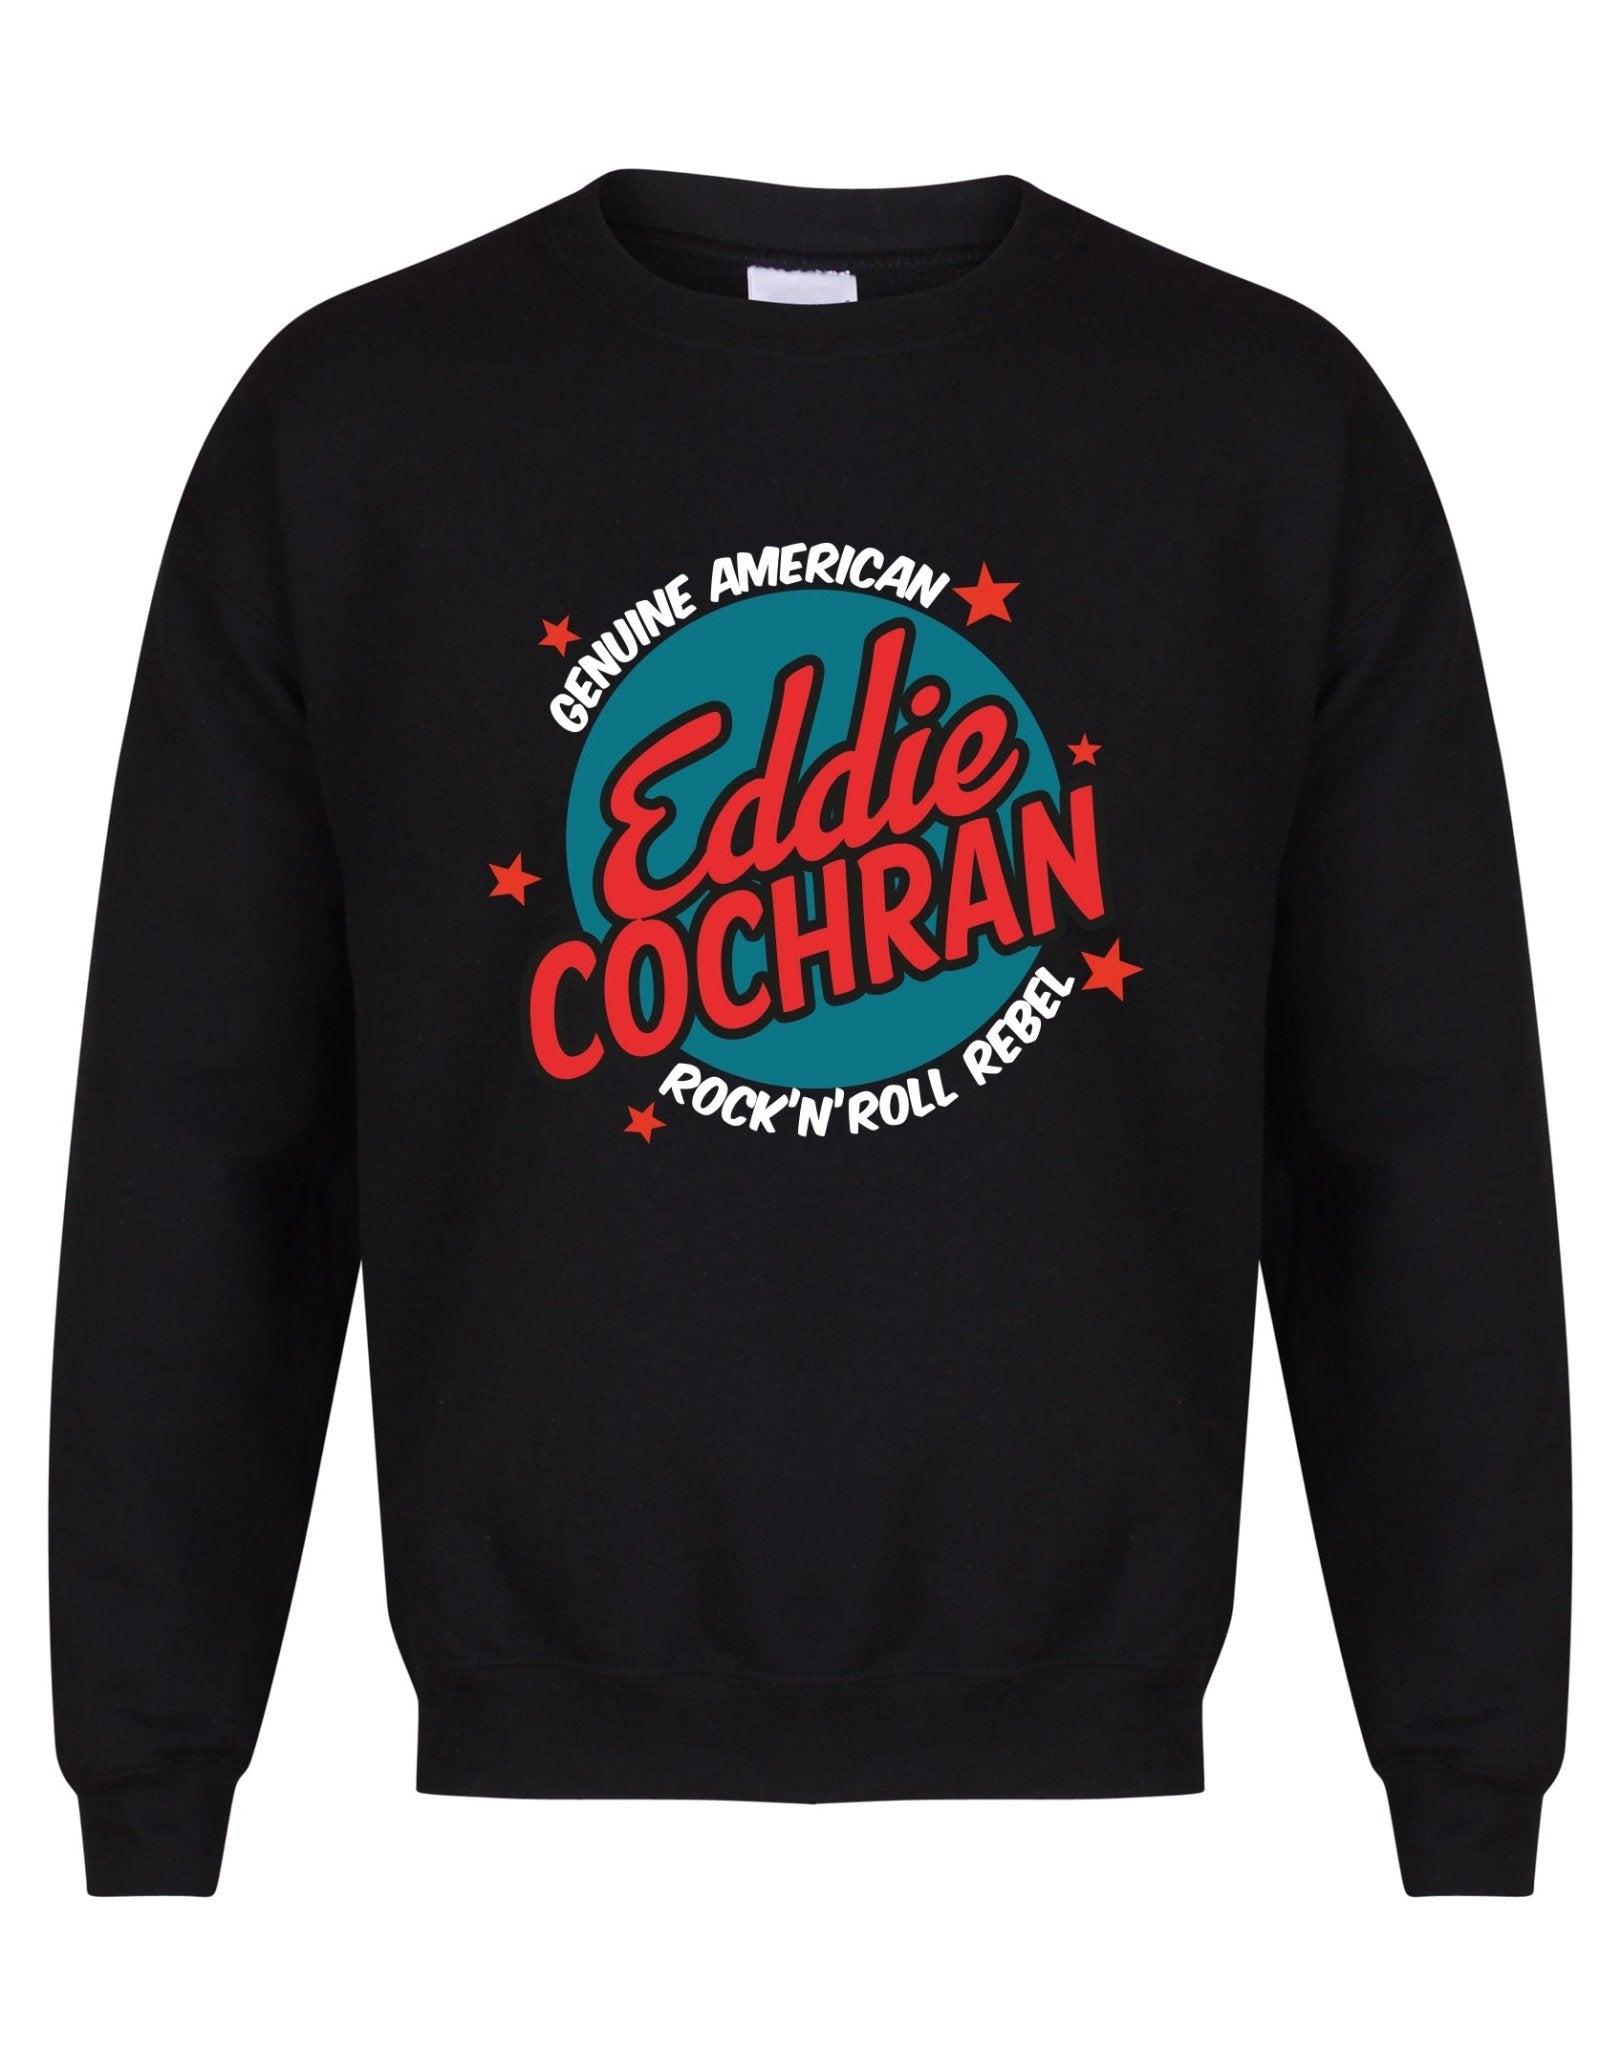 Eddie Cochran - rock'n'roll rebel - unisex sweatshirt - various colours - Dirty Stop Outs